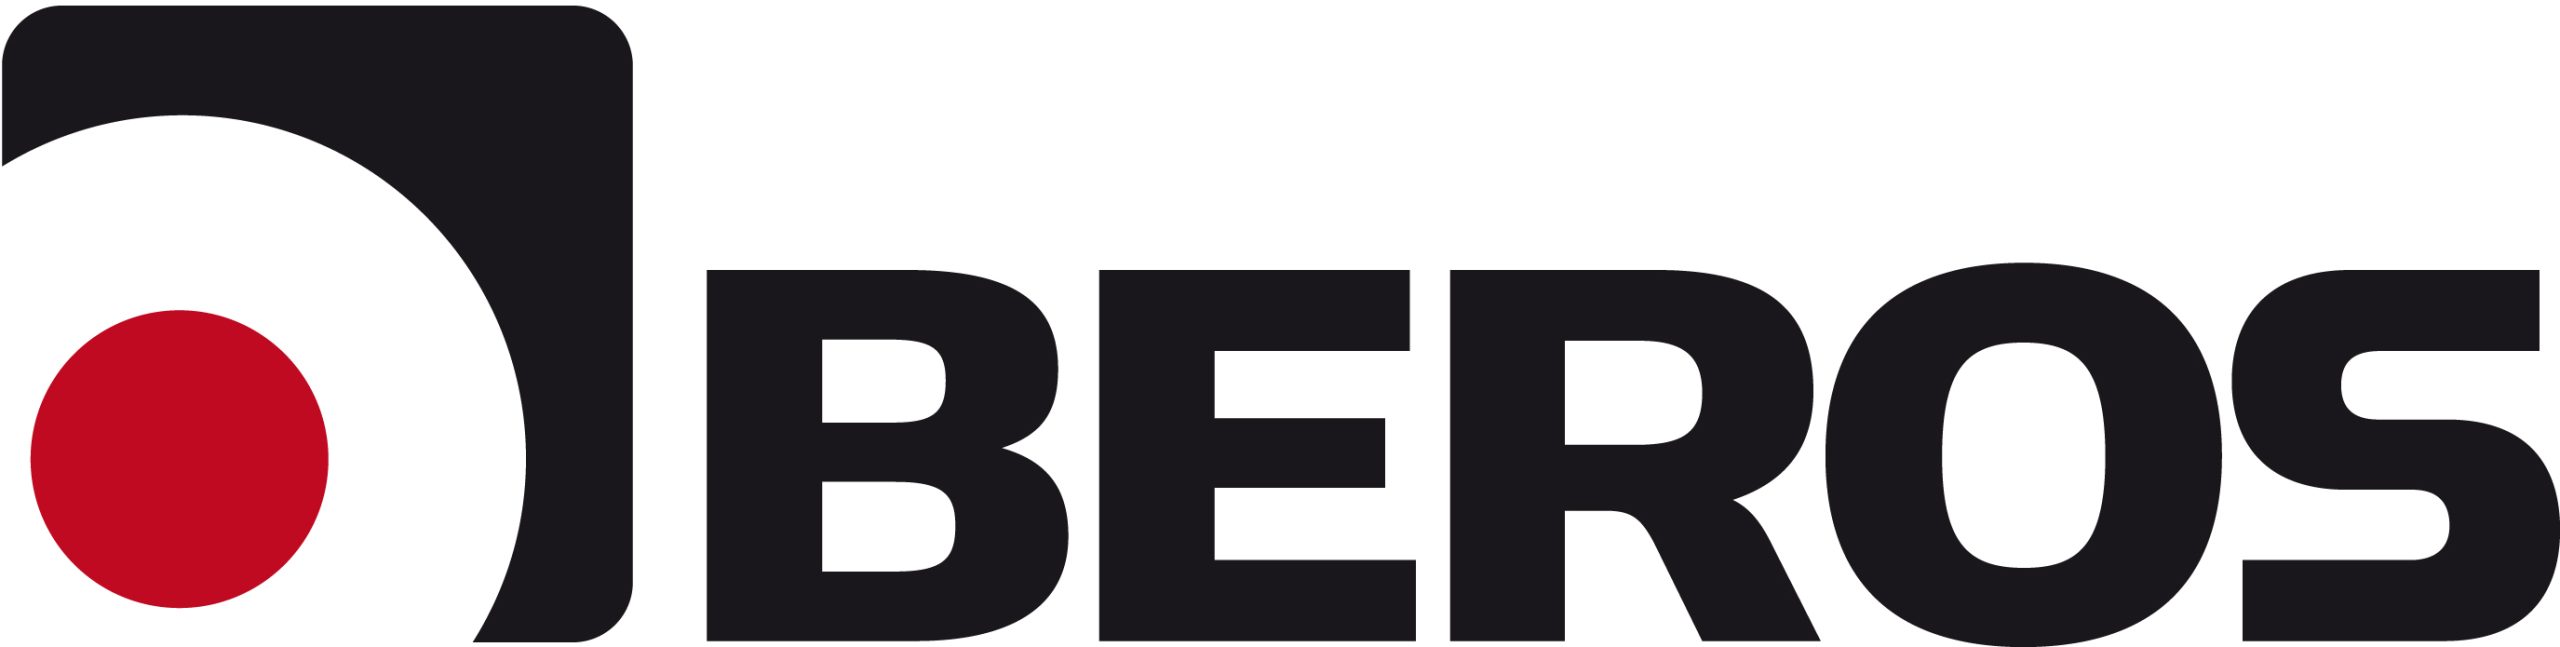 Beros logo horisontell